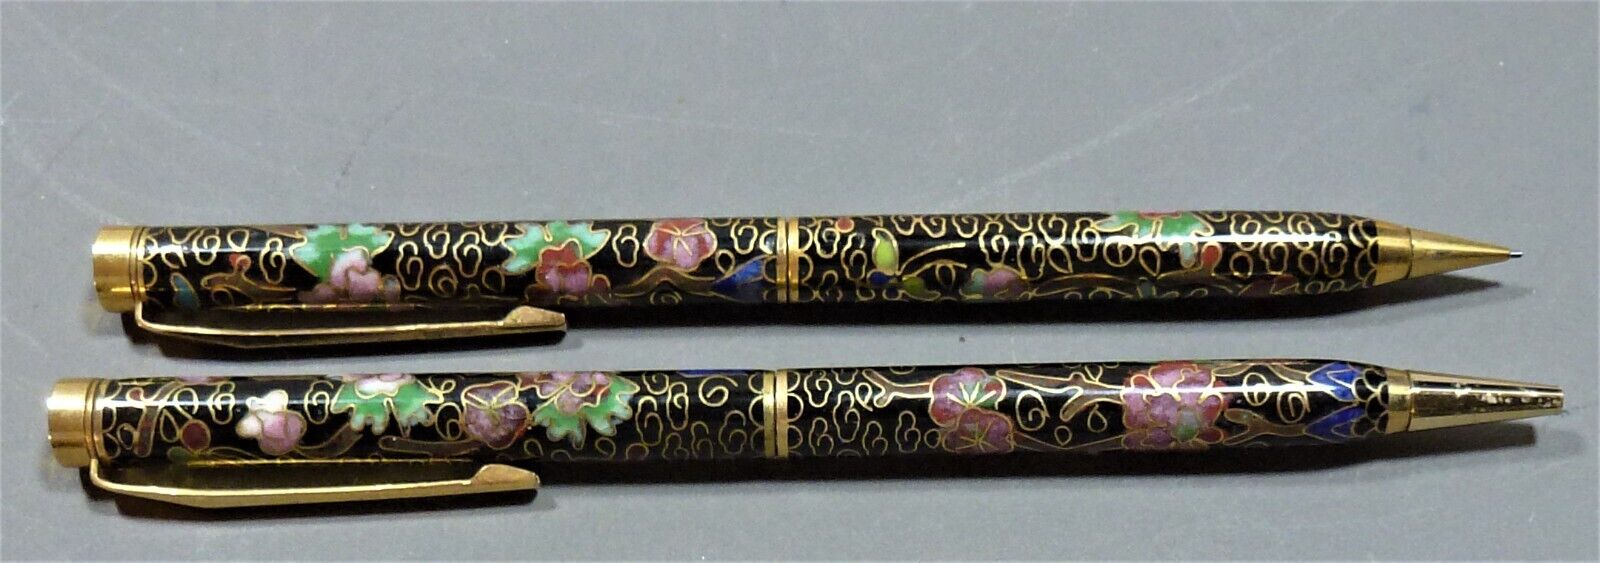 Vintage Cloisonné Colorful Floral Enameled Ballpoint Pen & Pencil Set, Very Nice